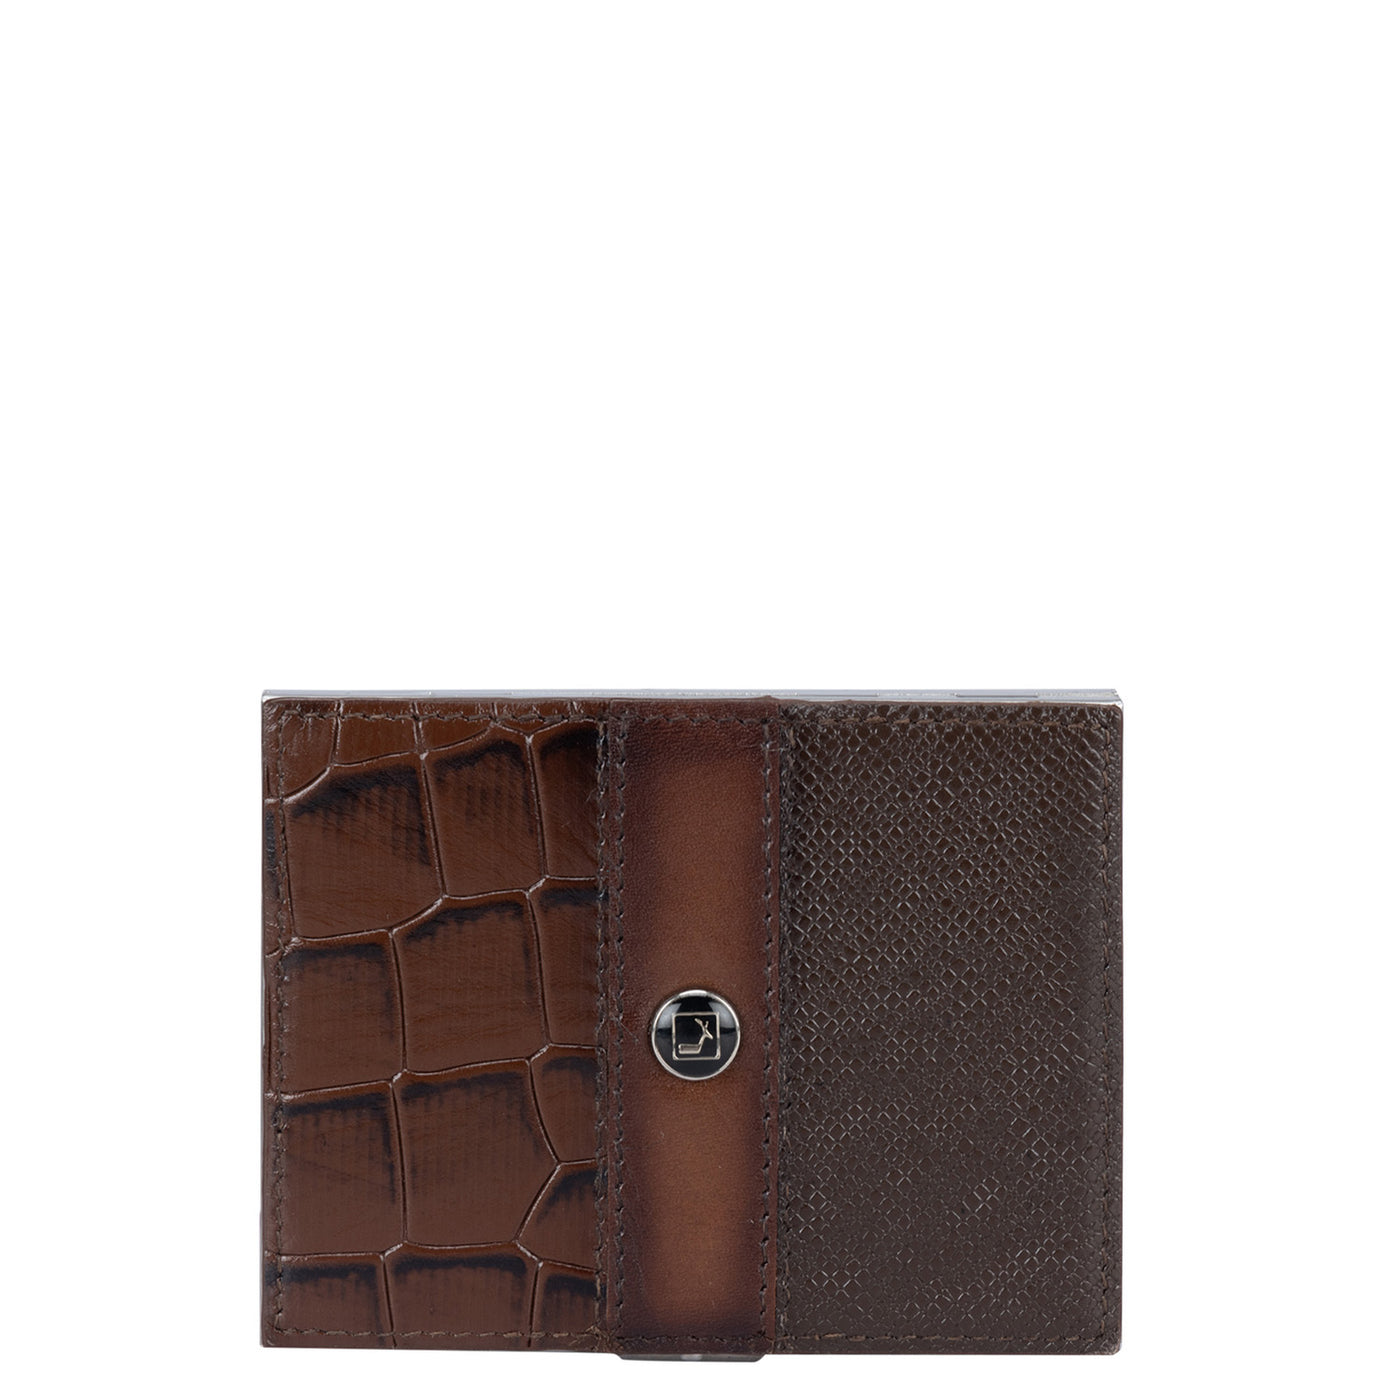 Franzy Croco Leather Cigarette Case - Oak